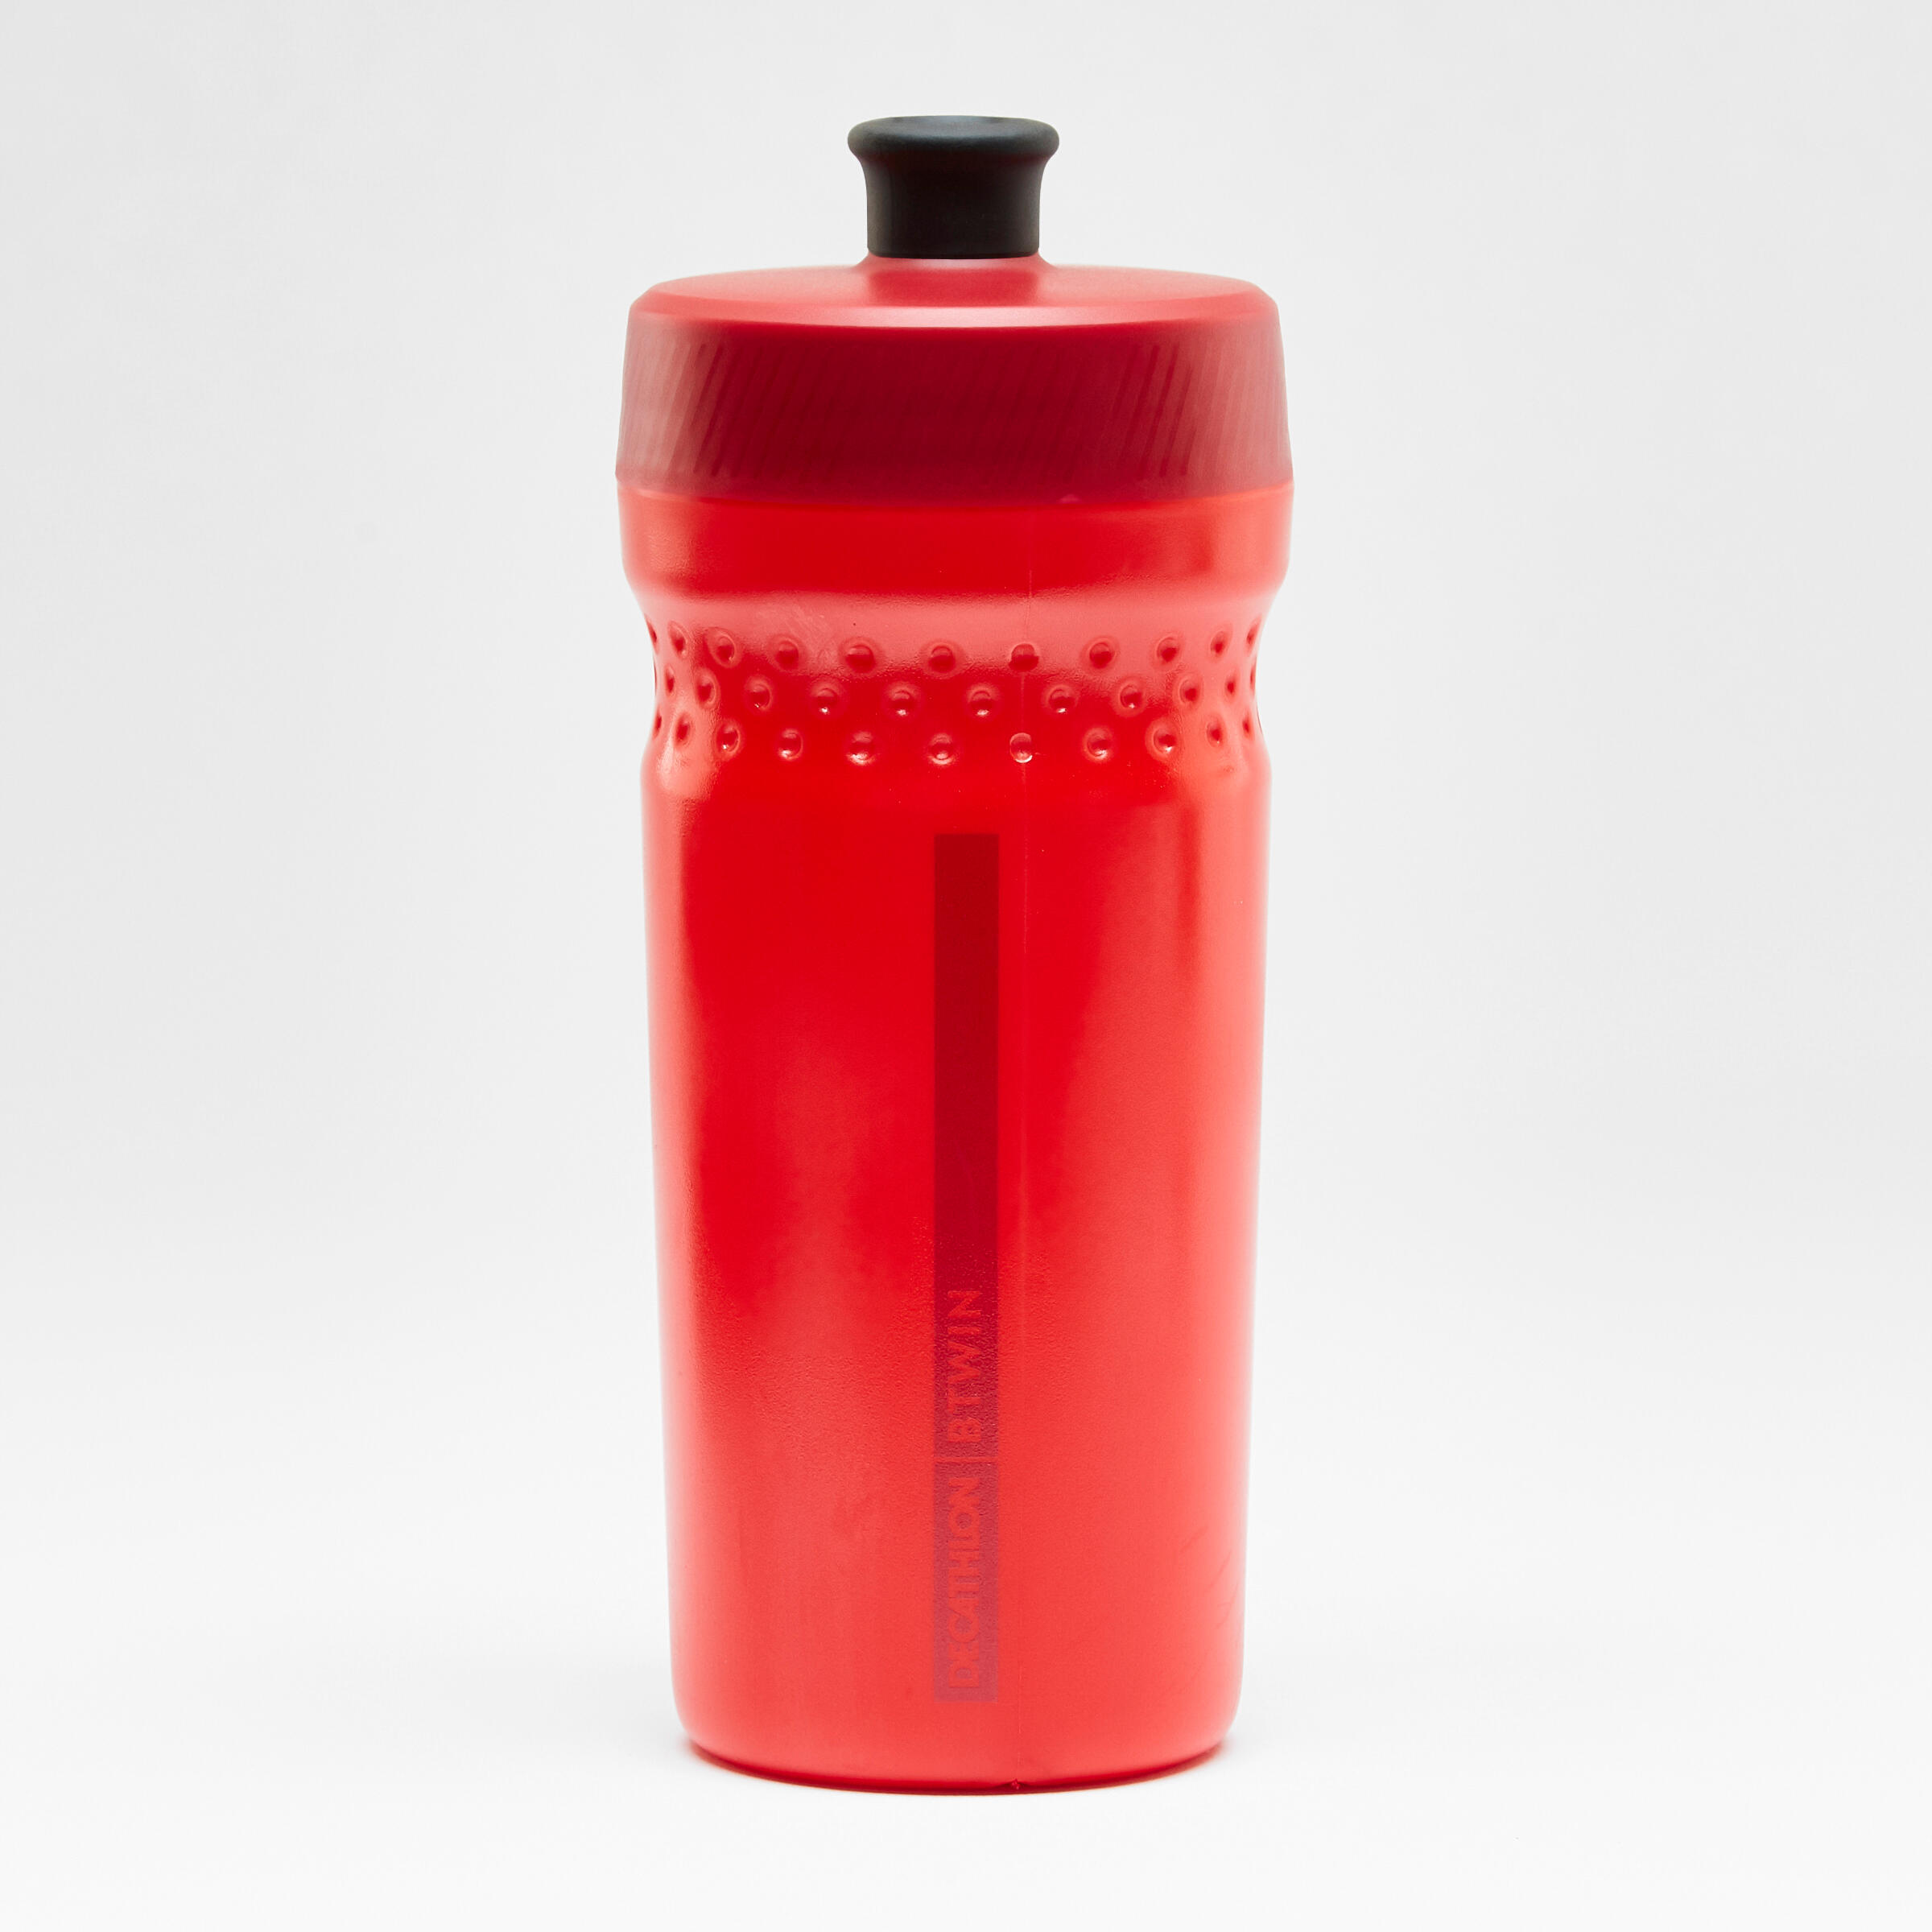 BTWIN 500 380 ml Kids' Water Bottle - Red